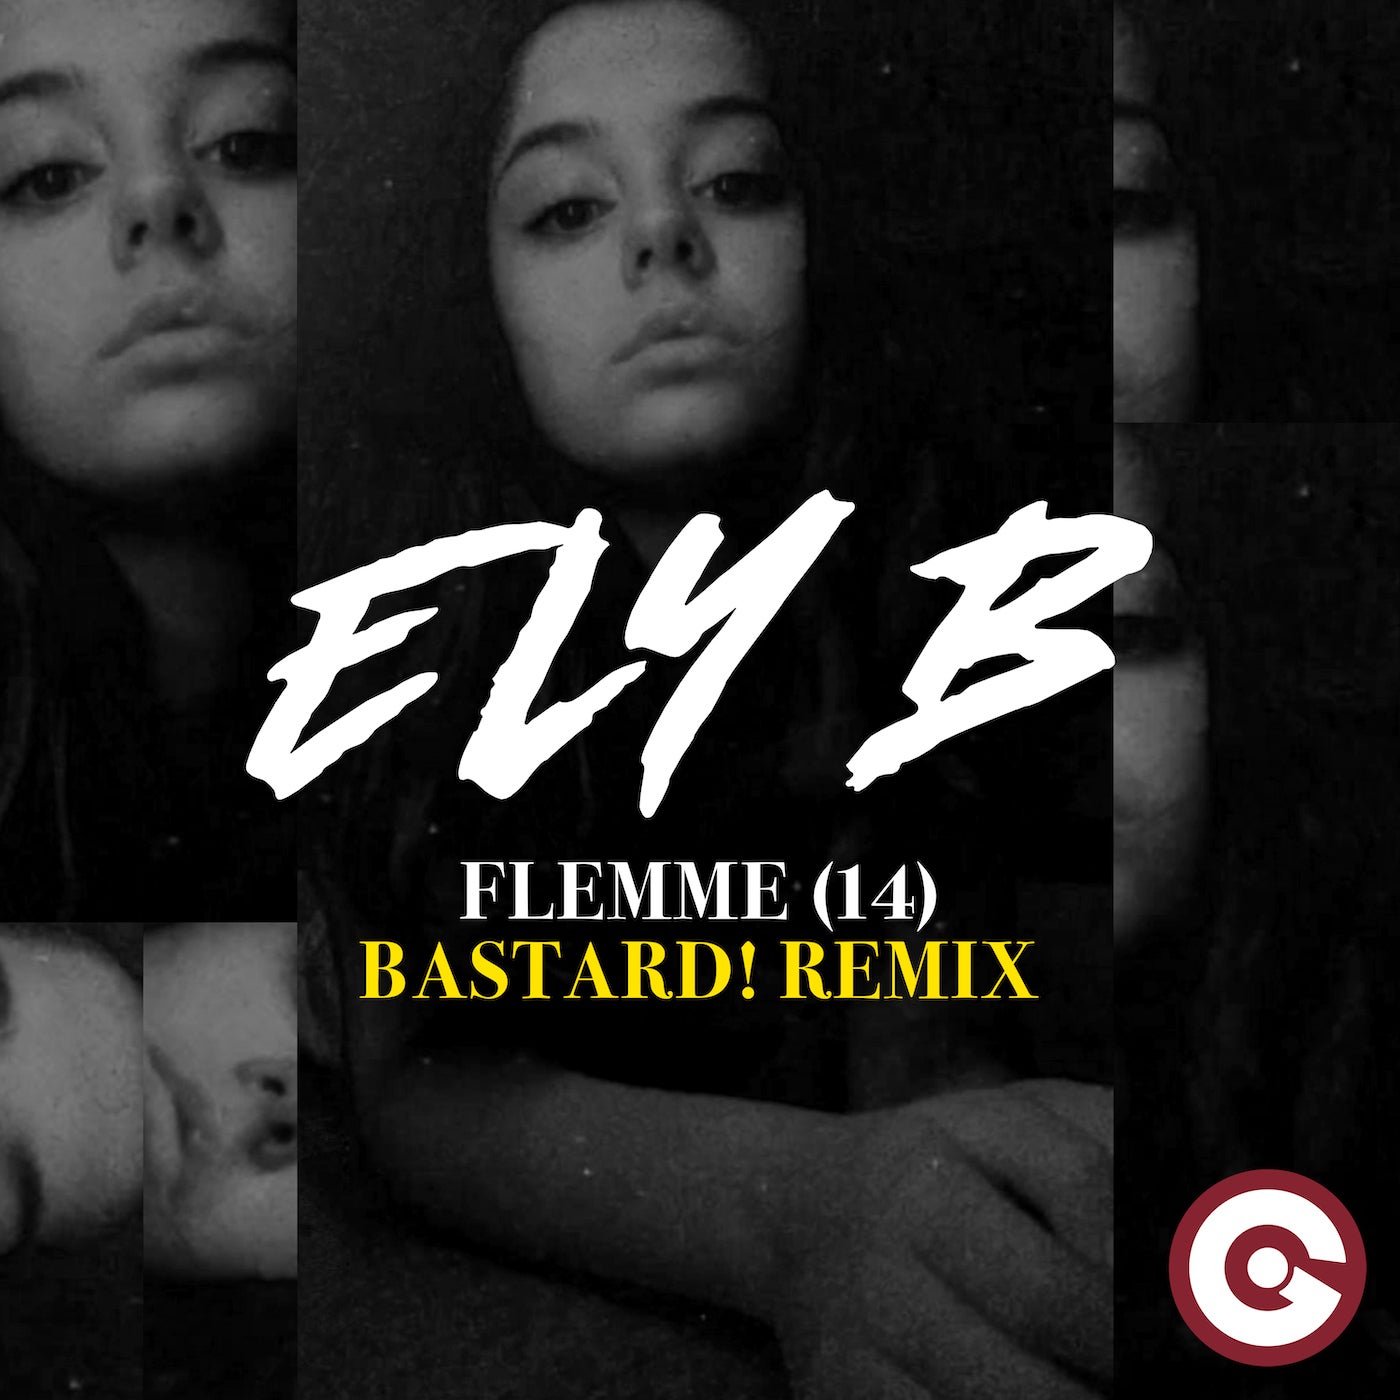 Flemme (14) (Bastard! Remix)